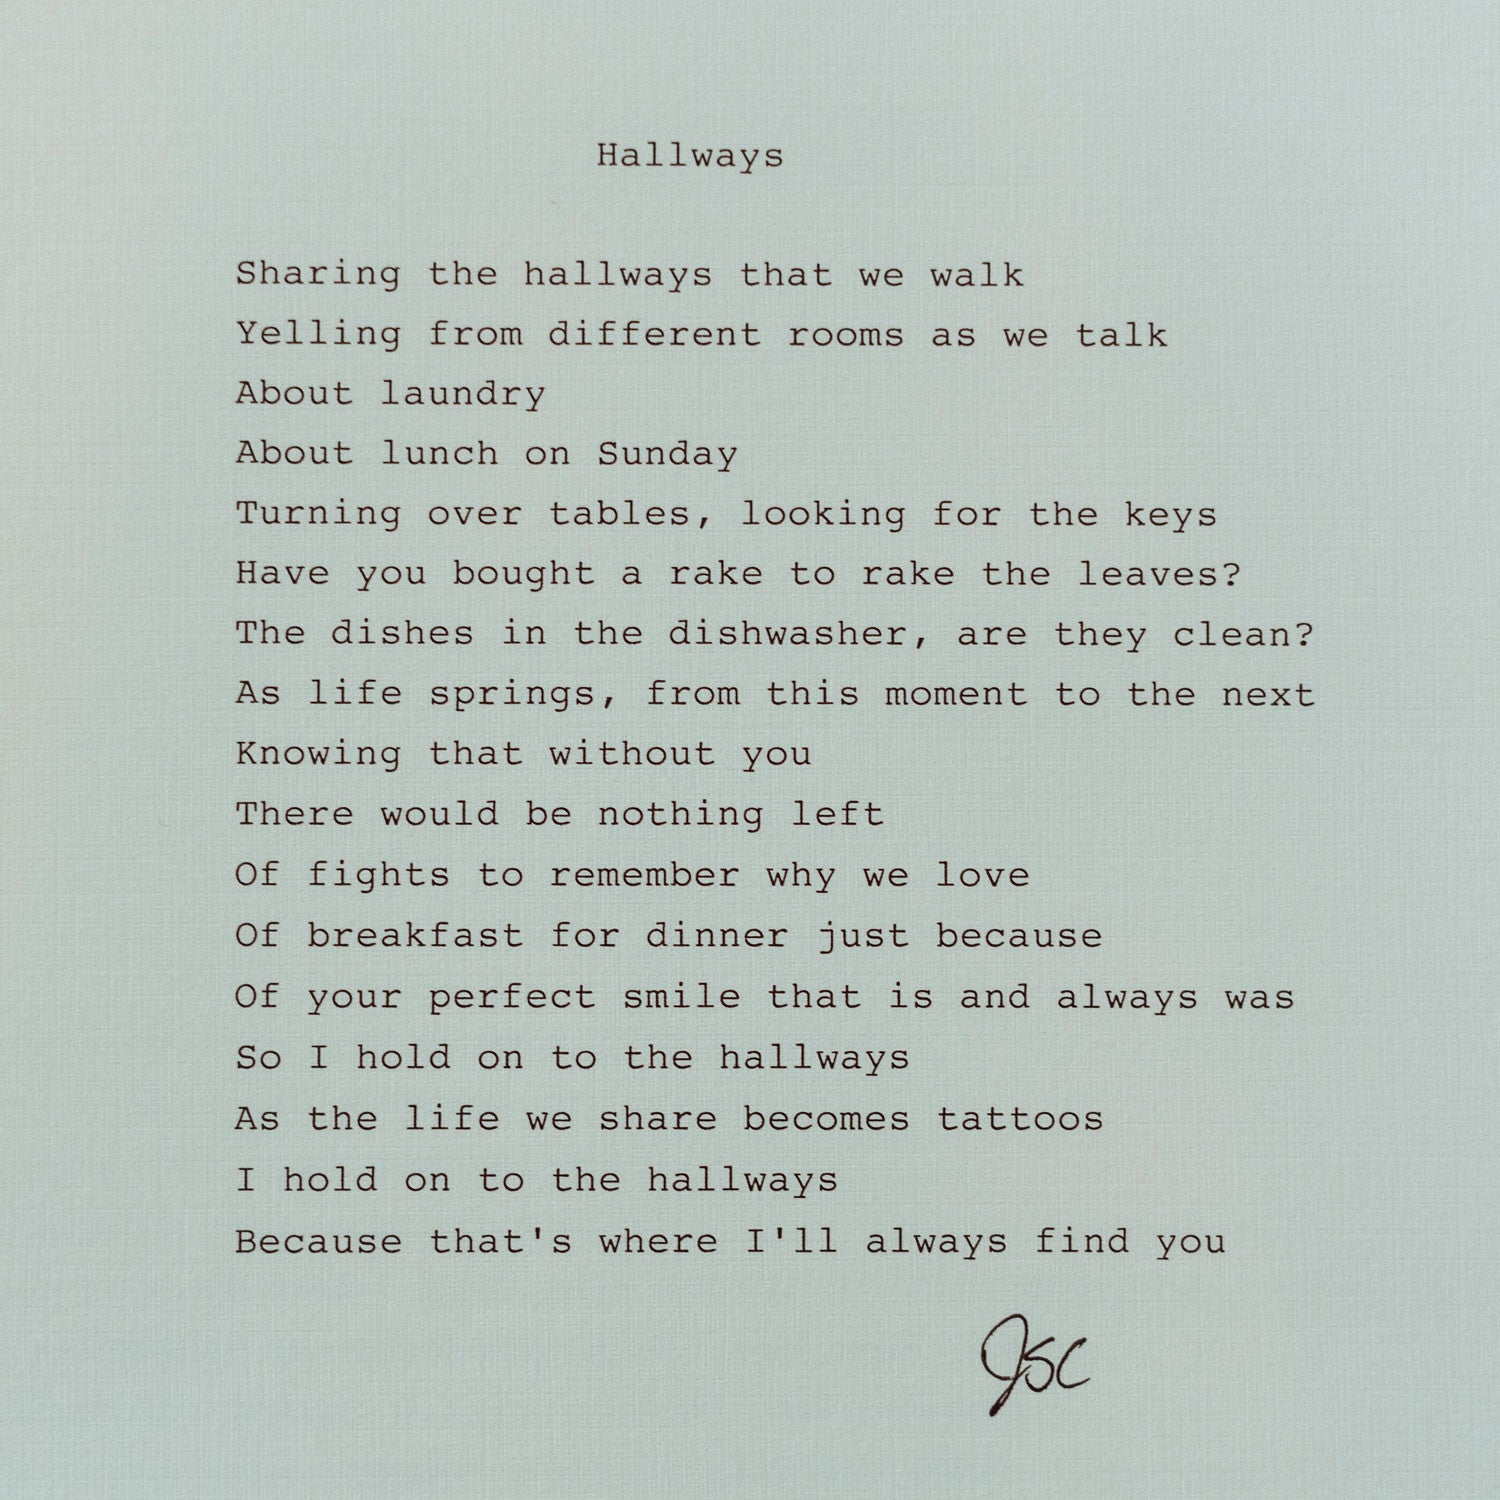 "Hallways" Poem